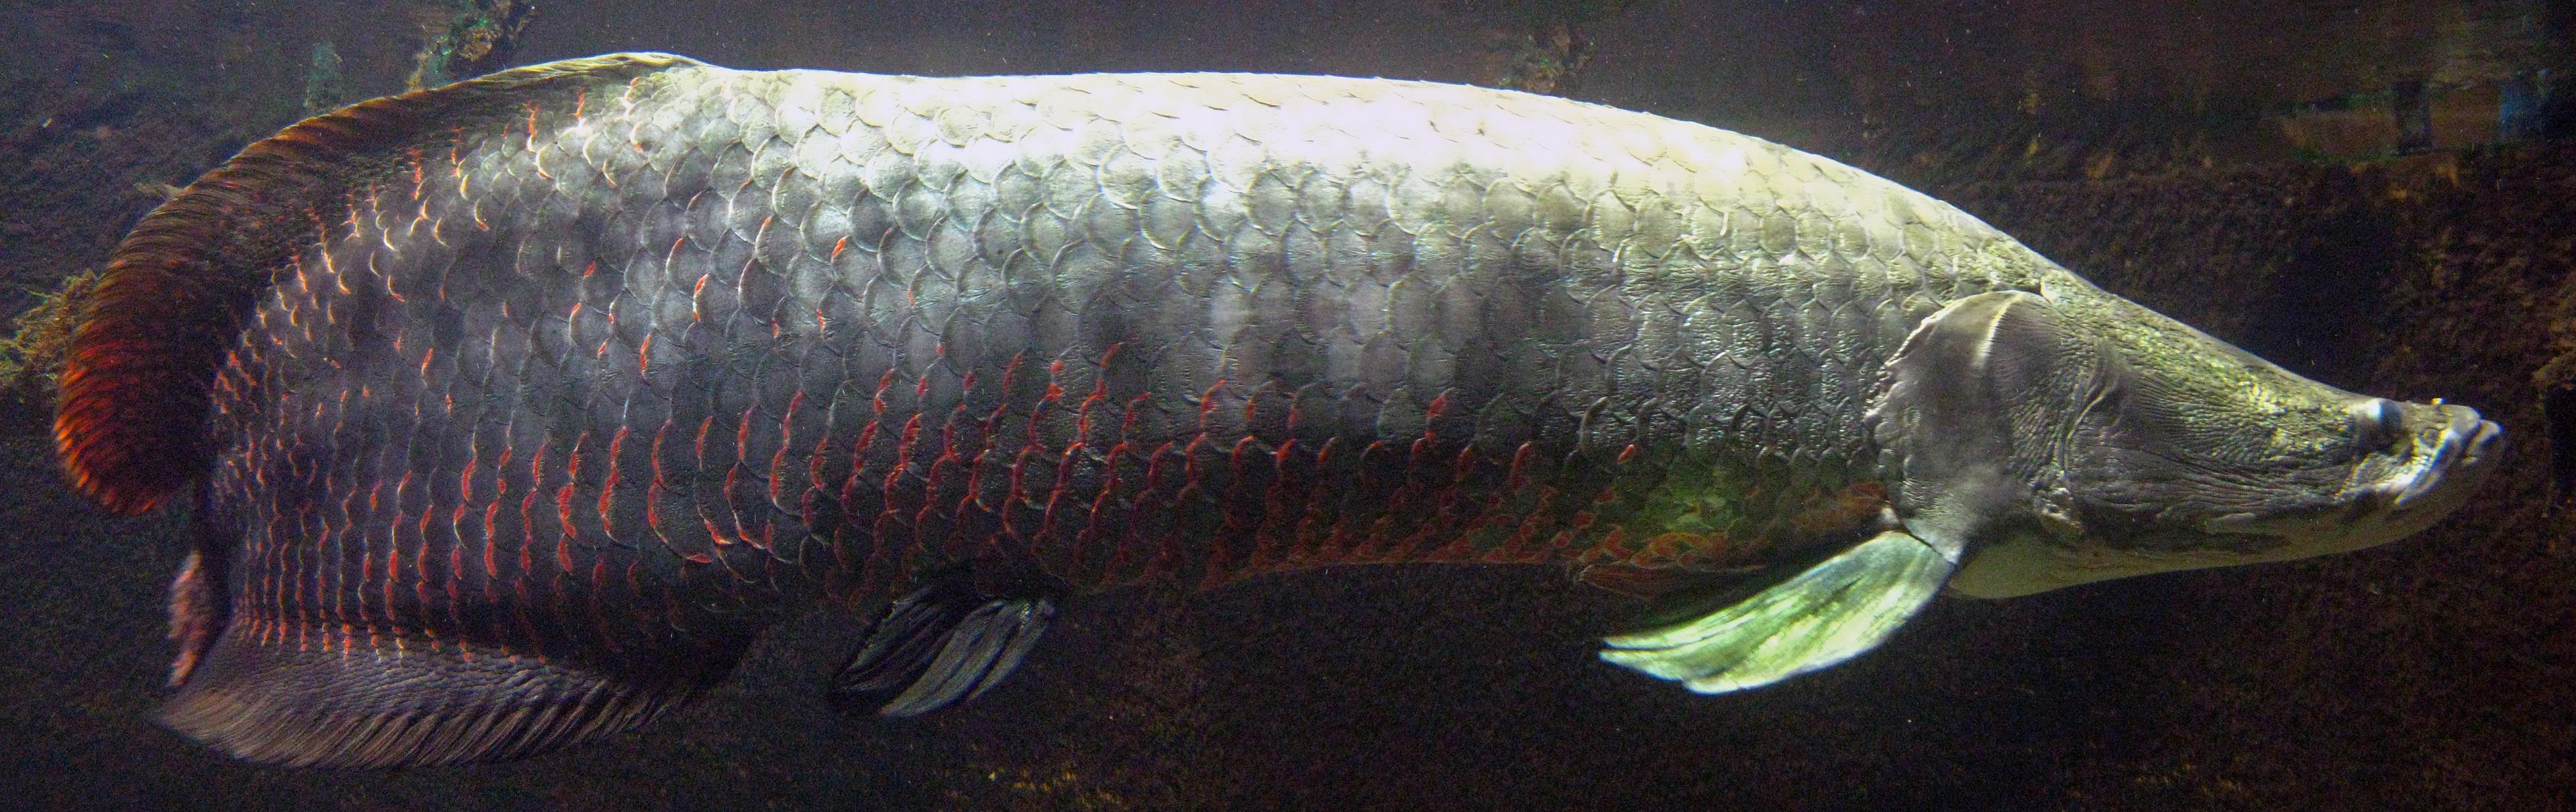 Ein großer Fisch von der Seite, rechts sein spitzes, nach oben gedrehtes Maul. Seine Schuppen schillern grün, grau und rot.